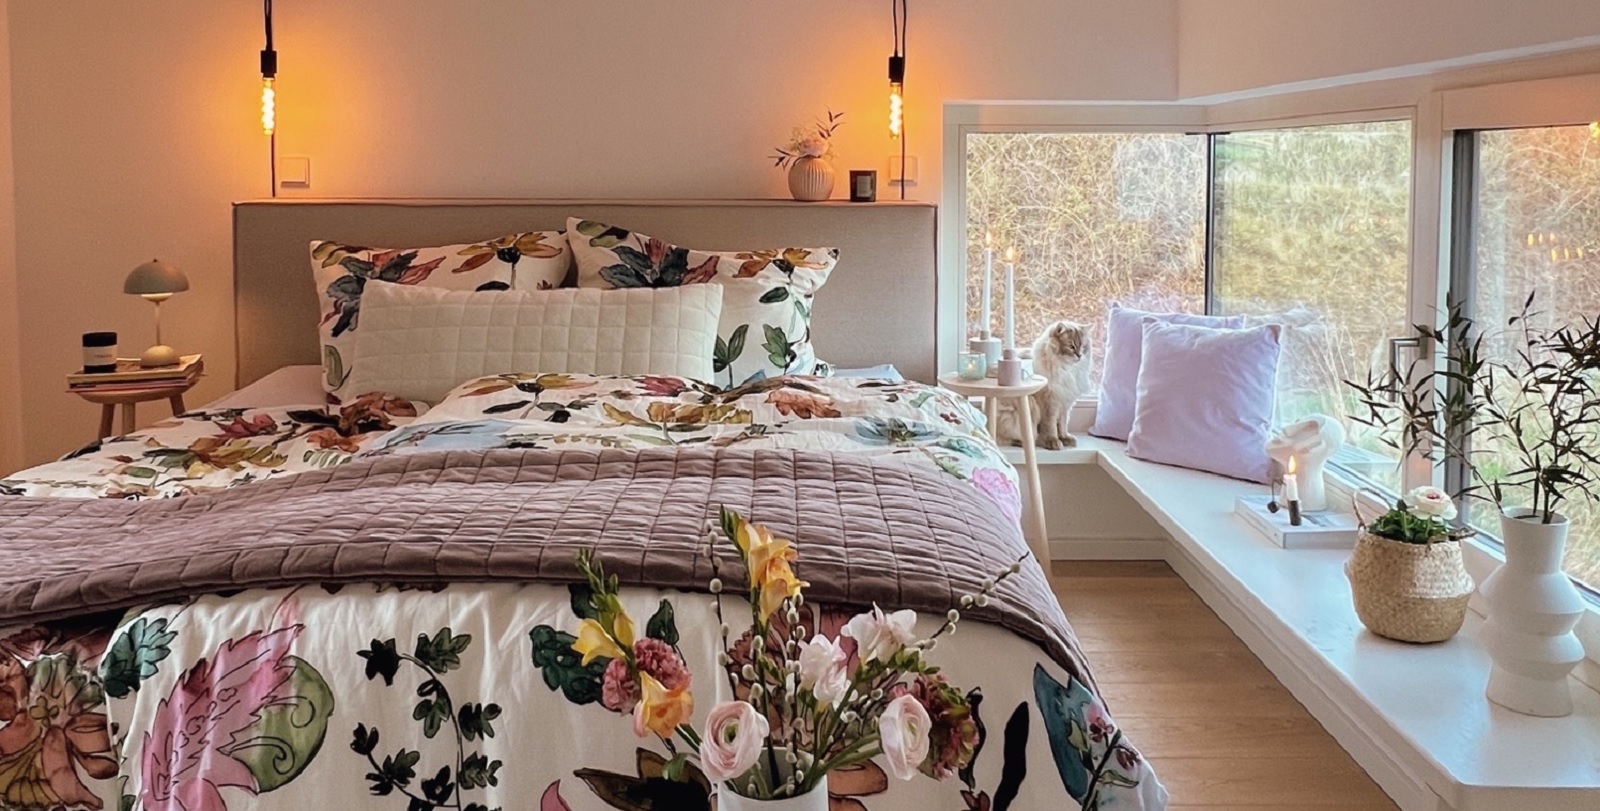 Nylon cafe Opheldering Stap voor stap naar een lente-achtige slaapkamer – ESSENZA HOME